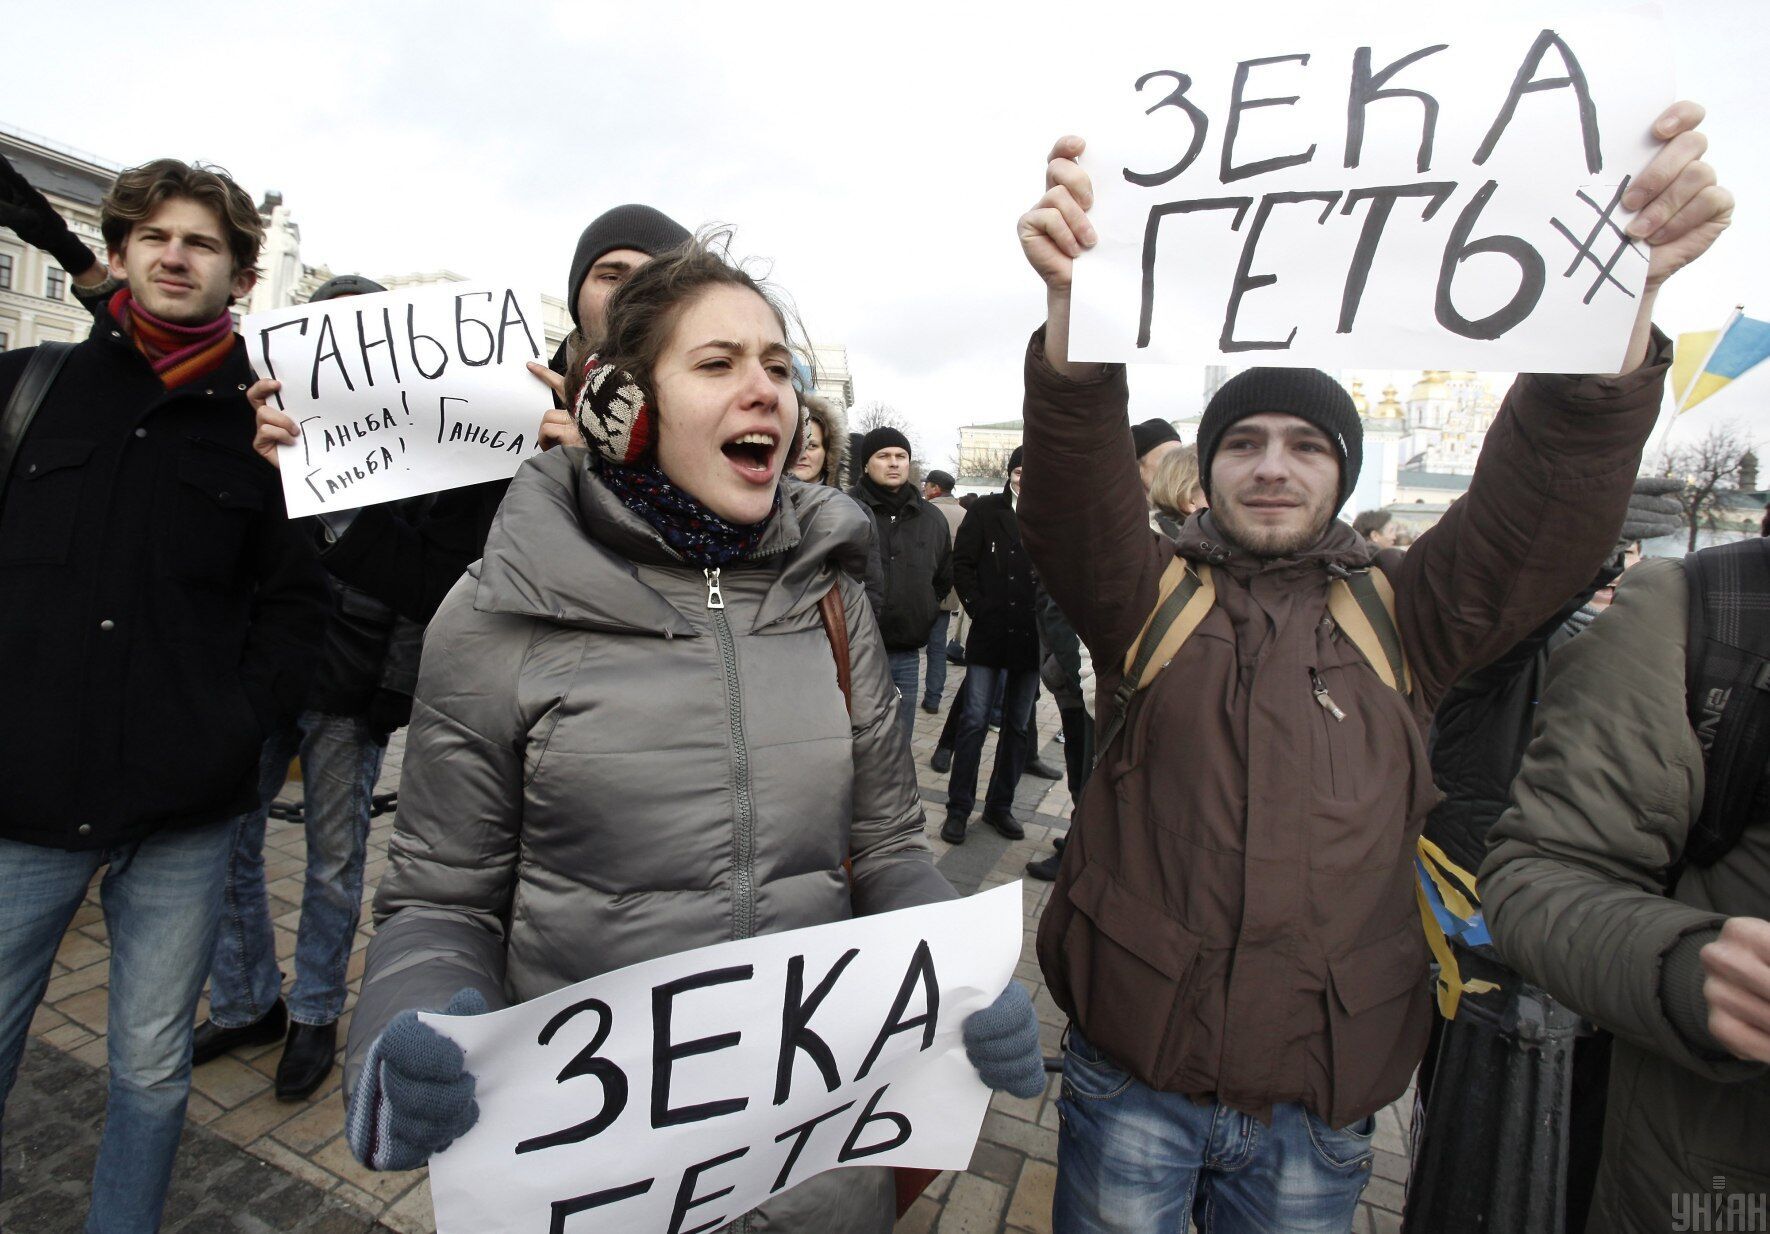 "Зека геть". Акція на підтримку євроінтеграції України на Михайлівській площі в Києві, 30 листопада 2013 року